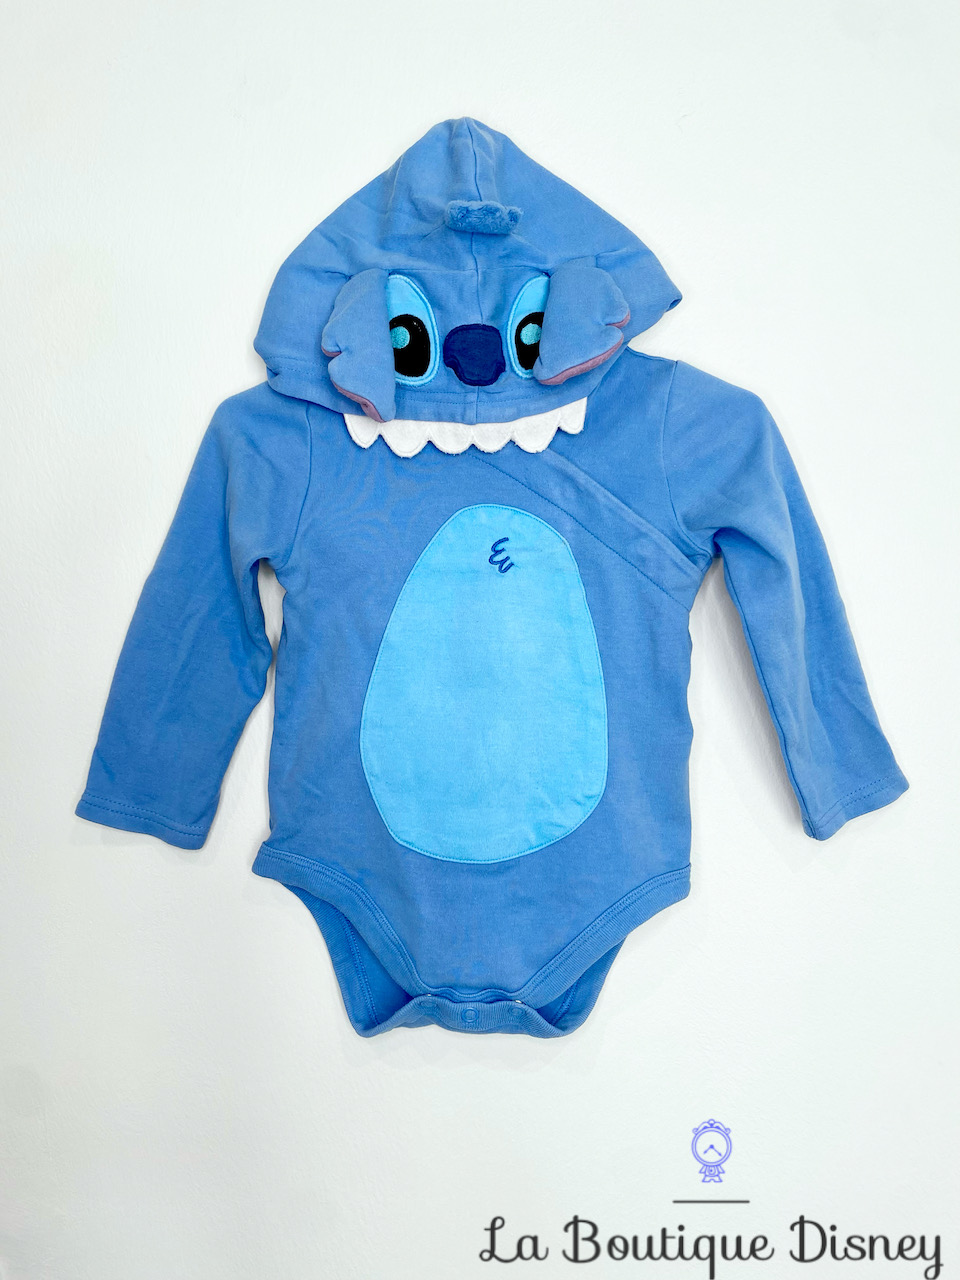 Body Déguisement Stitch Disney Baby by Disney Store taille 12-18 mois  monstre bleu - Déguisements/Taille 0 à 3 ans - La Boutique Disney